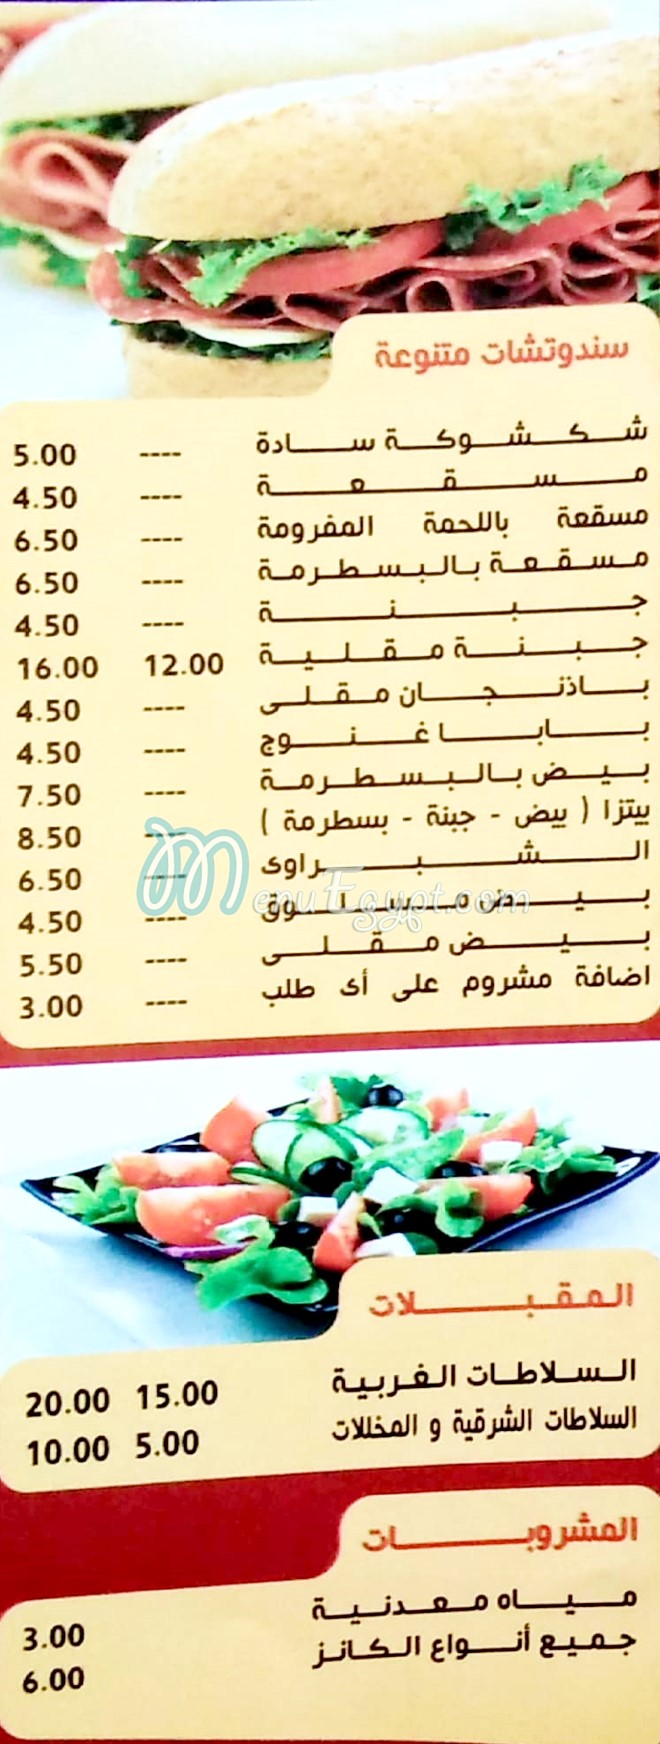 El Shabrawy El Hossein menu prices